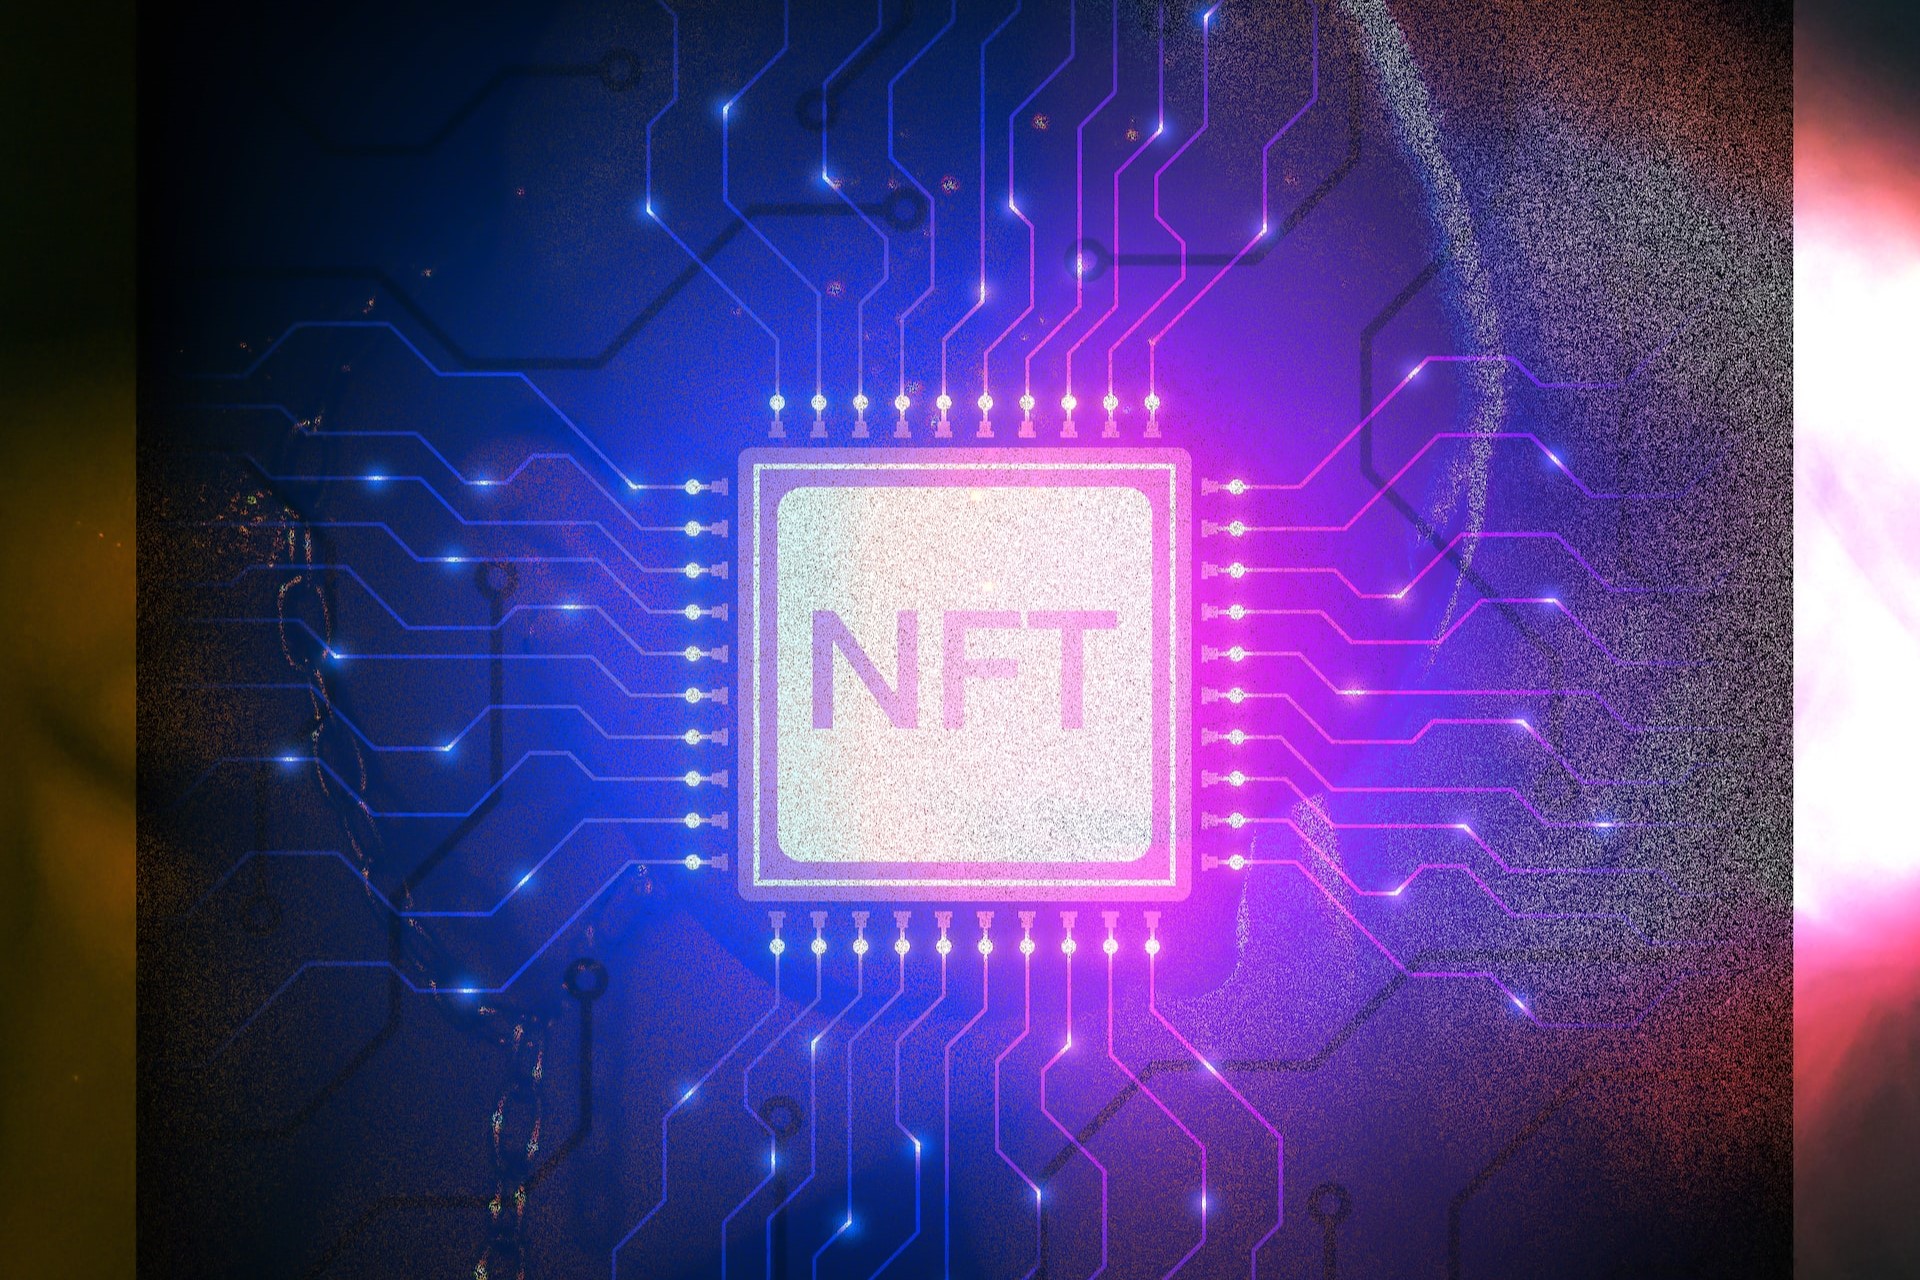 Was ist ein NFT? - Definition, Bedeutung, Anwendungsbeispiele und Beyond the Hype